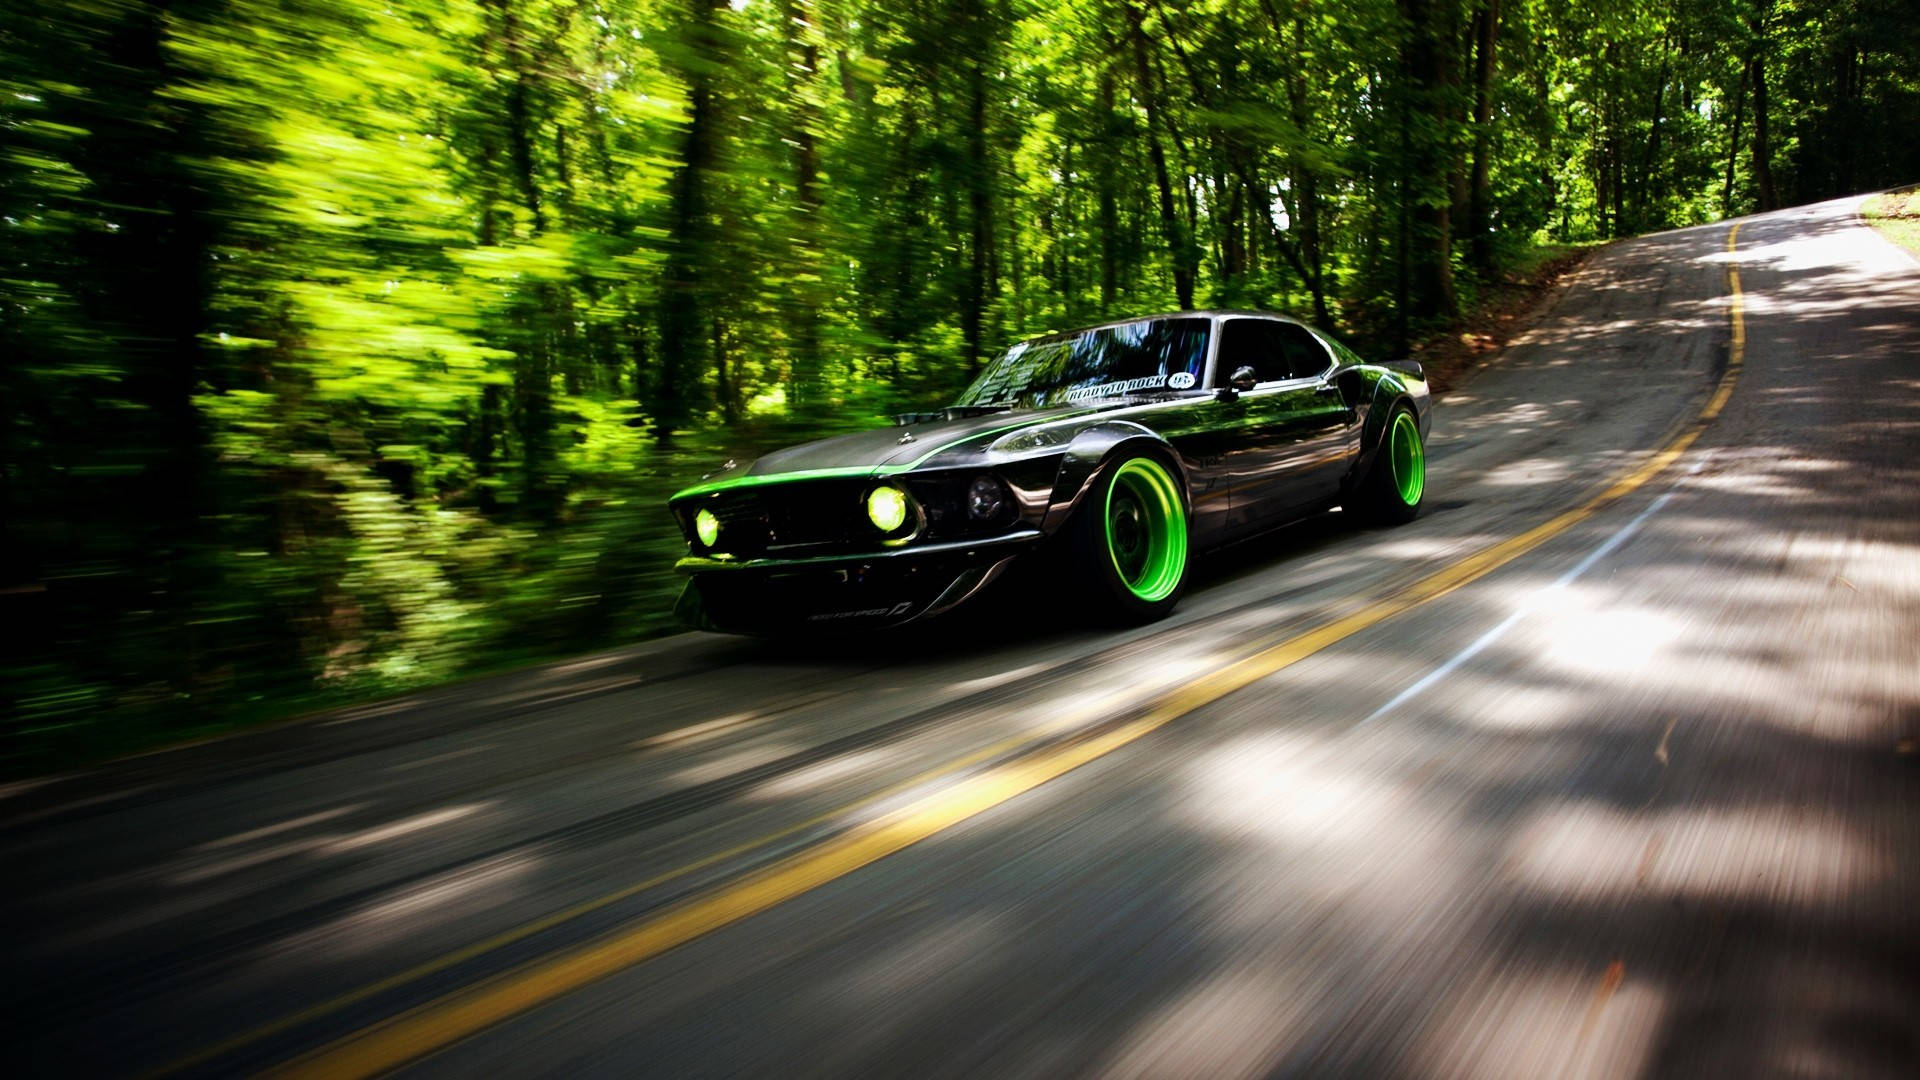 Rtr-x Green Mustang Hd